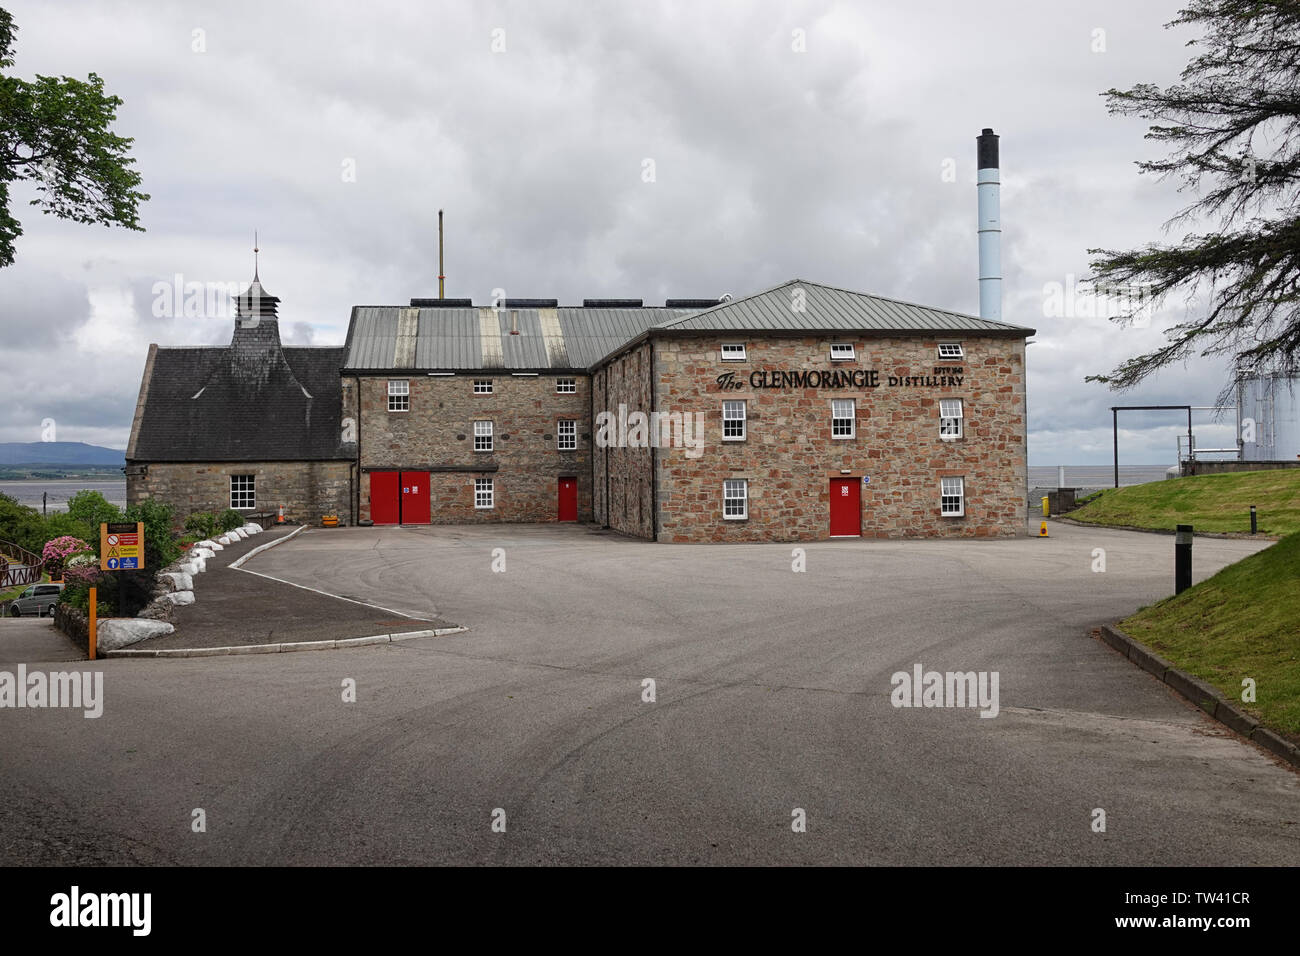 Tain Scozia - Giugno 11, 2019: Il fronte esterno del Glenmorangie Distillery, fondata nel 1843 e si trova nelle Highlands scozzesi, è mostrato. Foto Stock